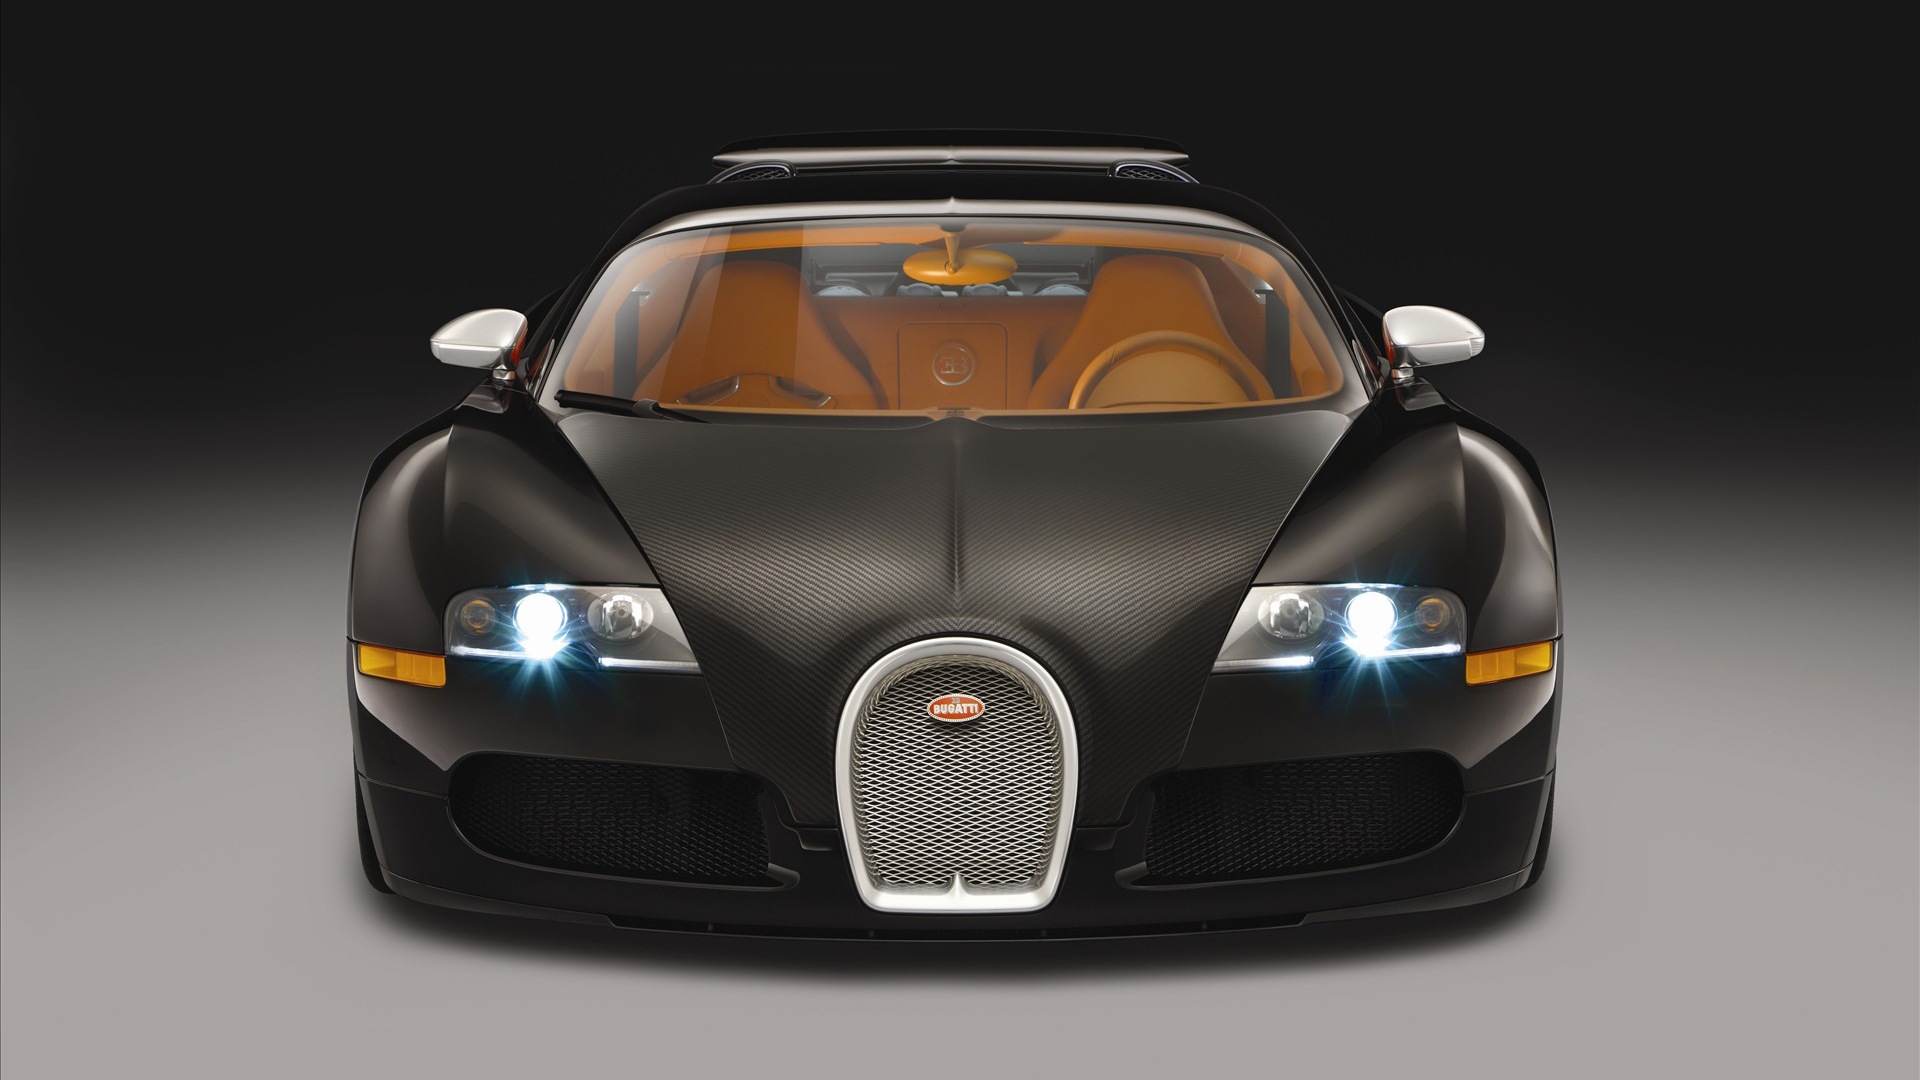 Bugatti Veyron Front View - HD Wallpaper 